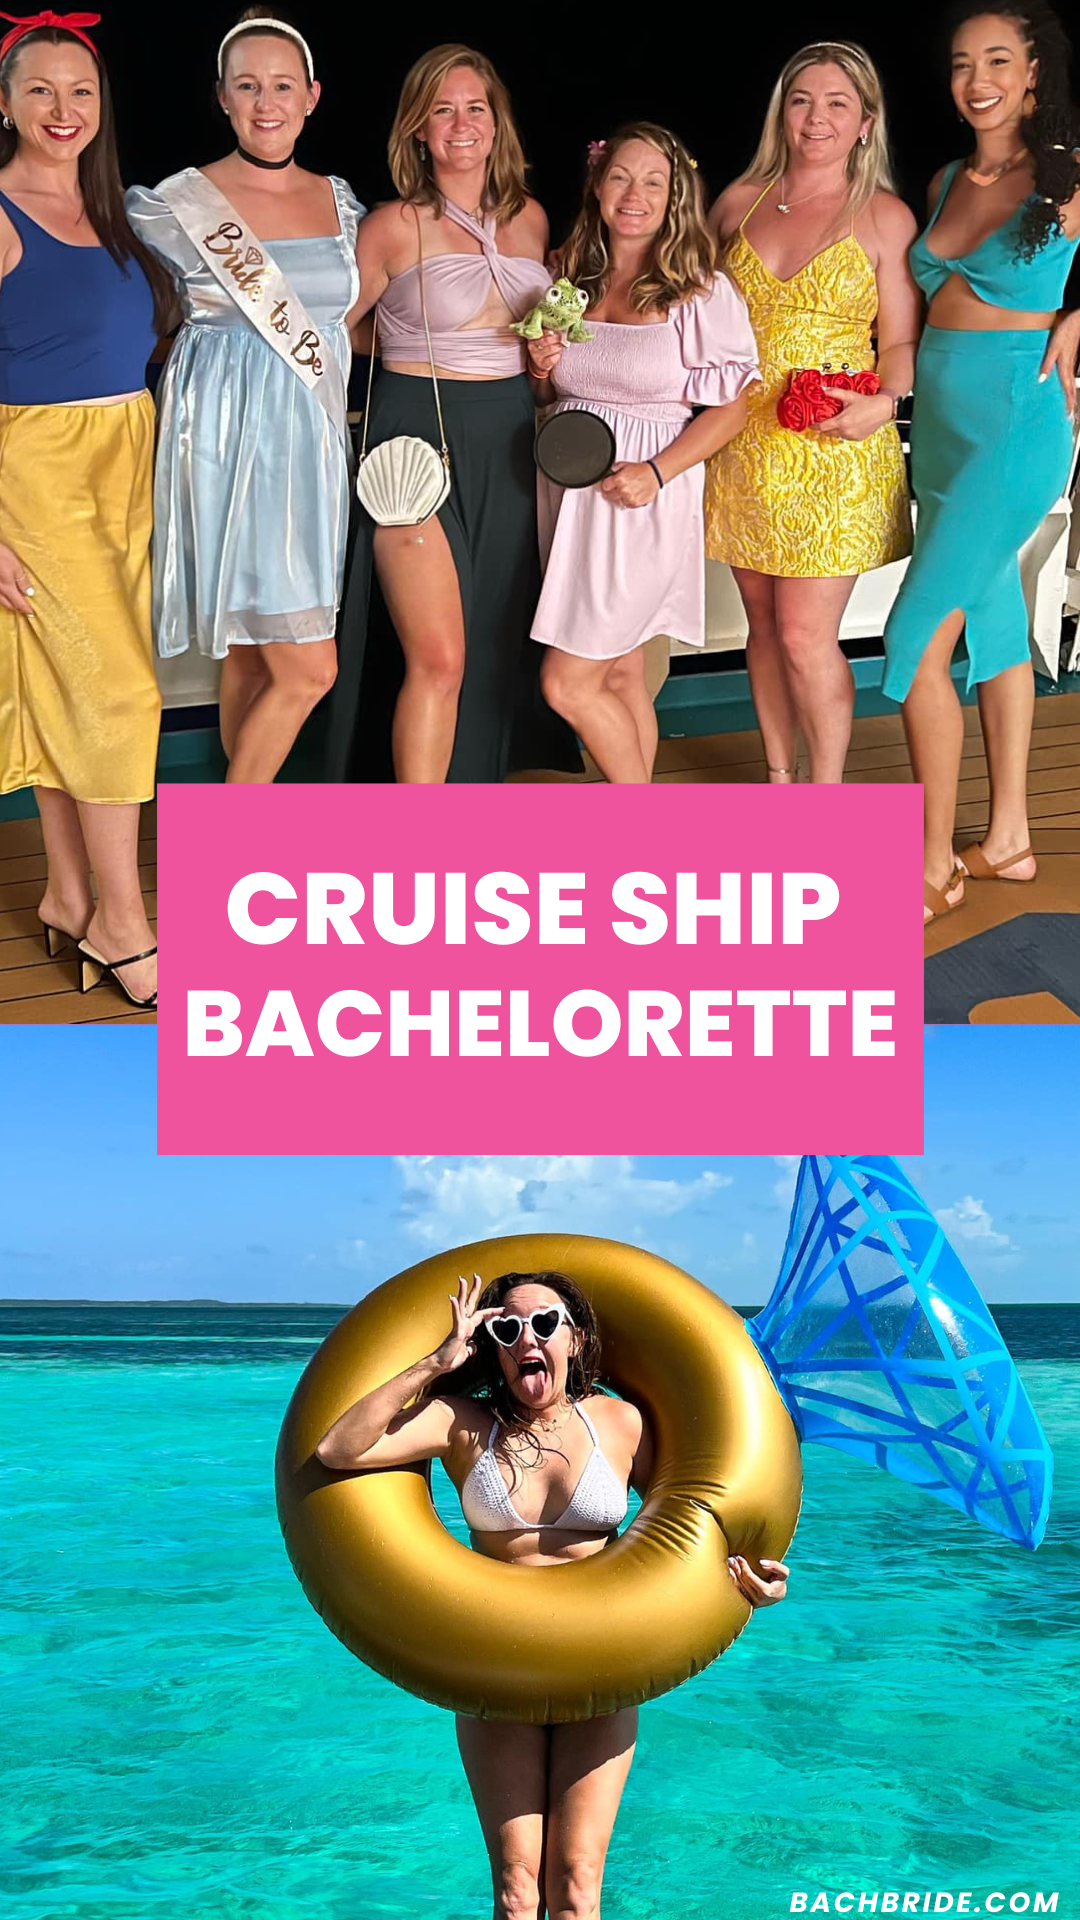 bachelorette on cruise ship